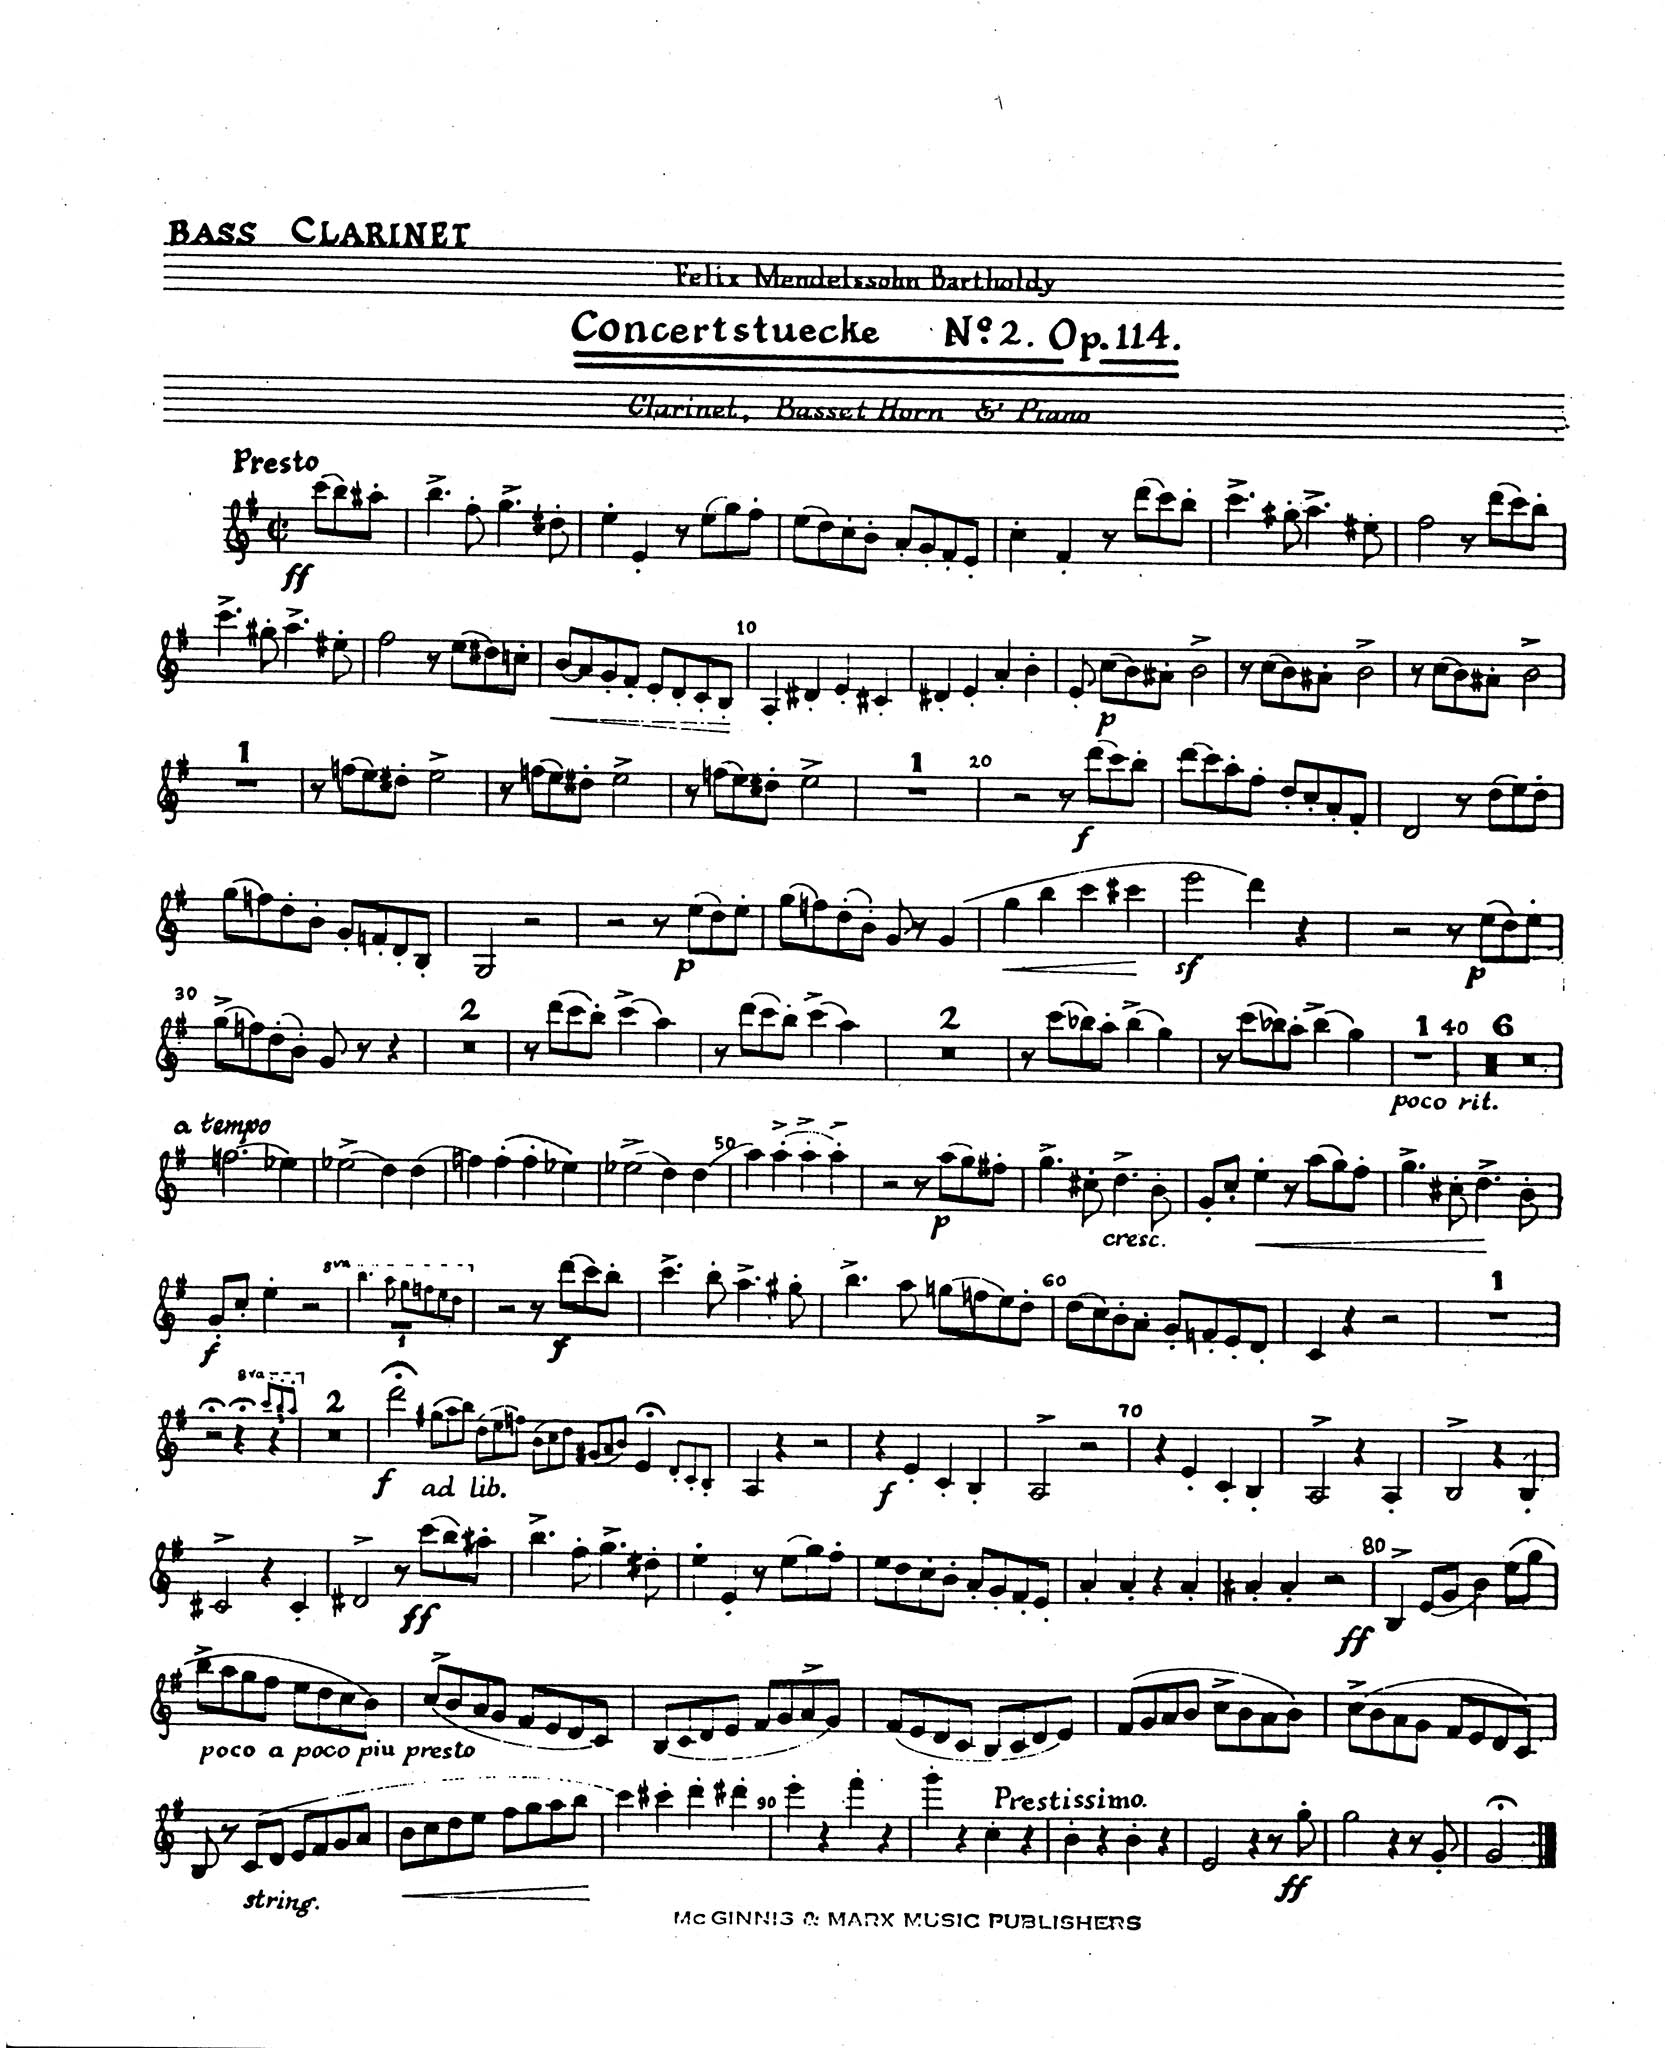 Konzertstück No. 2 in D Minor, Op. 114 Bass Clarinet part